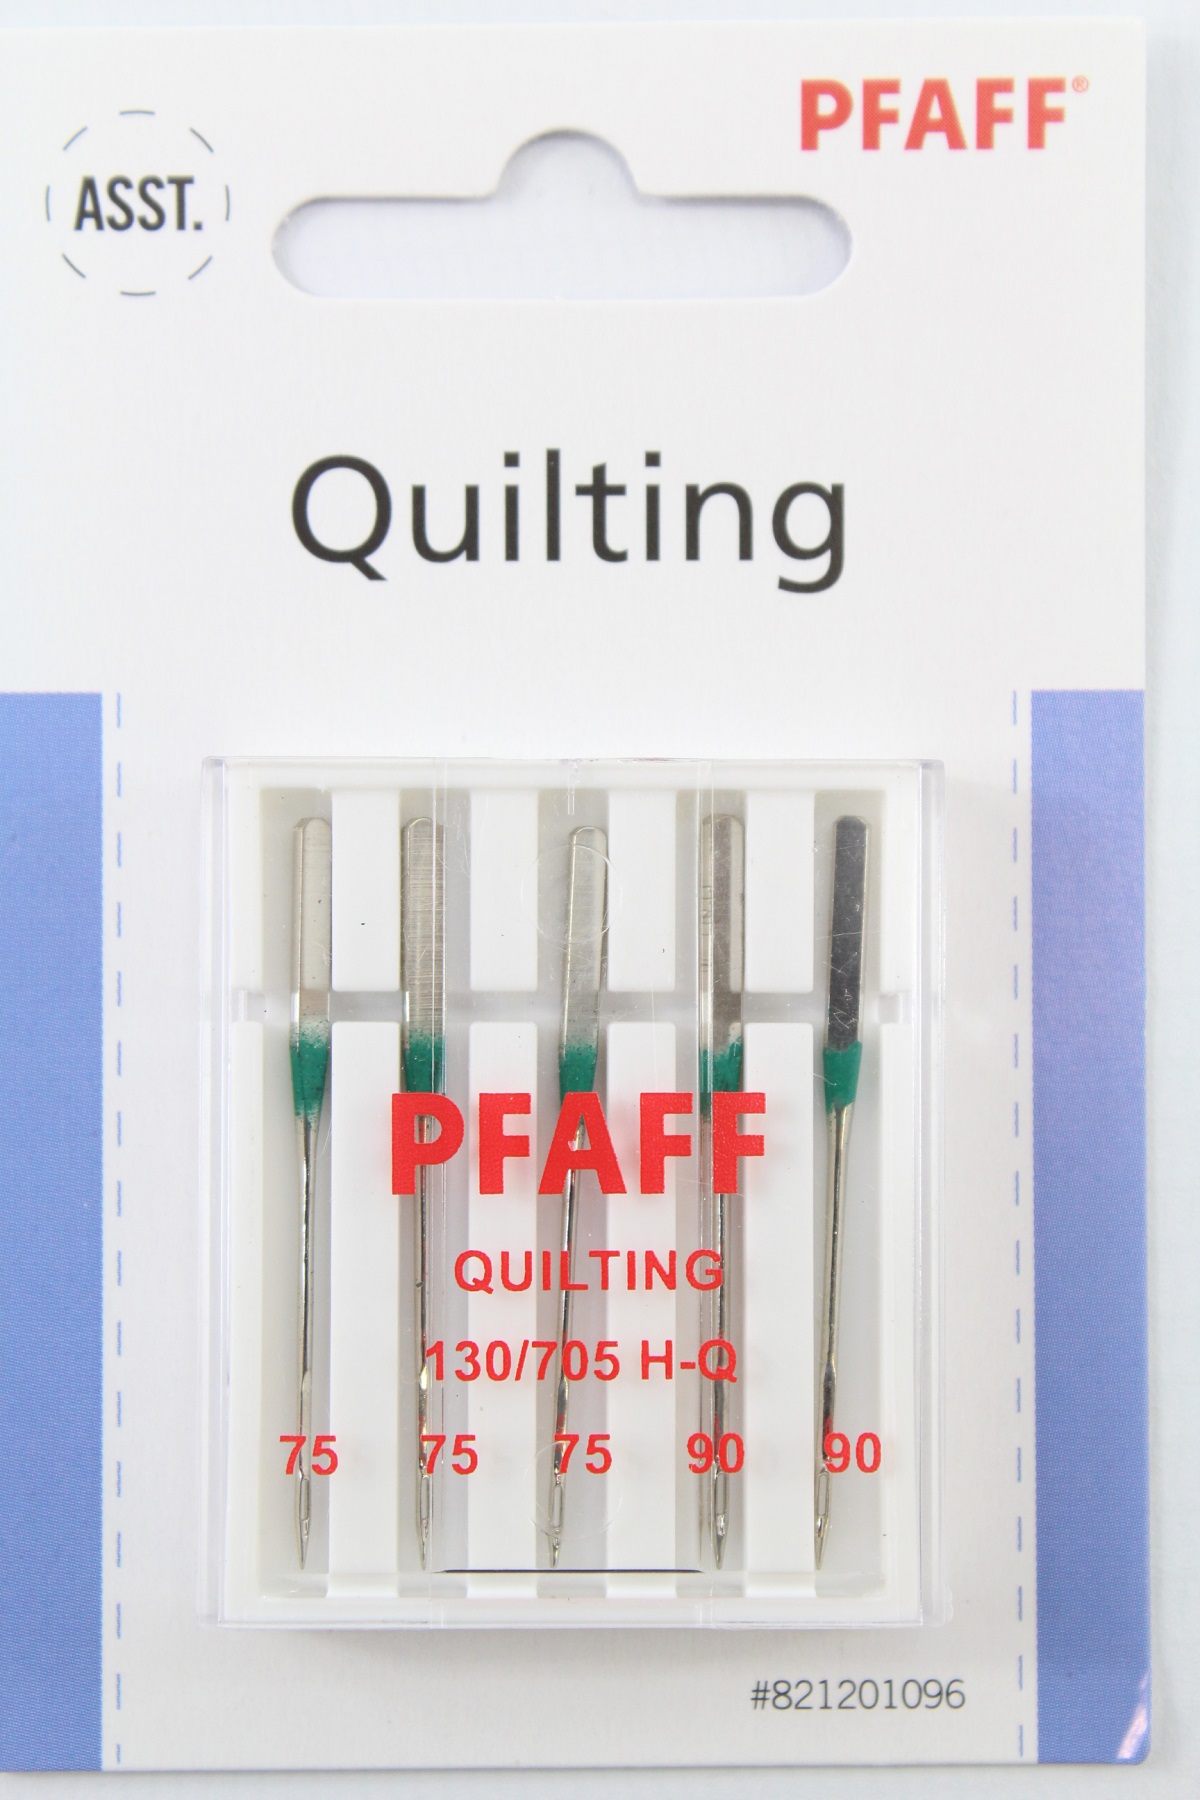 Original PFAFF Quilting 130/705 H-Q (Stärke75 und 90) im 5er Pack